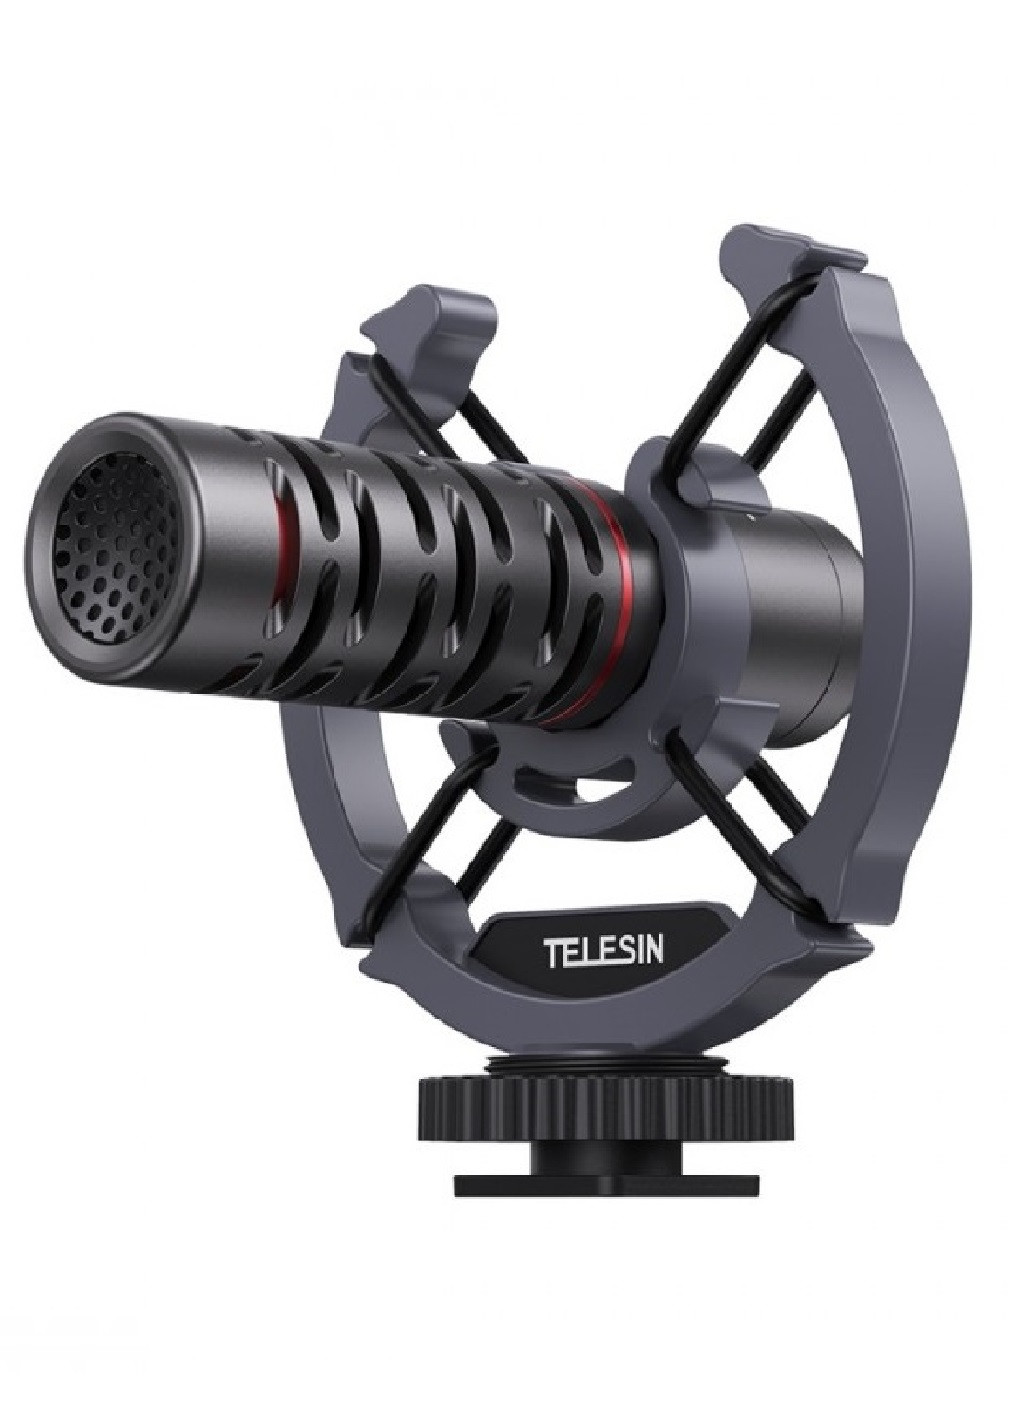 Мікрофон Telesin MIC-VM02 компактний алюмінієвий для фото відео камер телефонів 20х80 мм (474072-Prob) Unbranded (257267668)